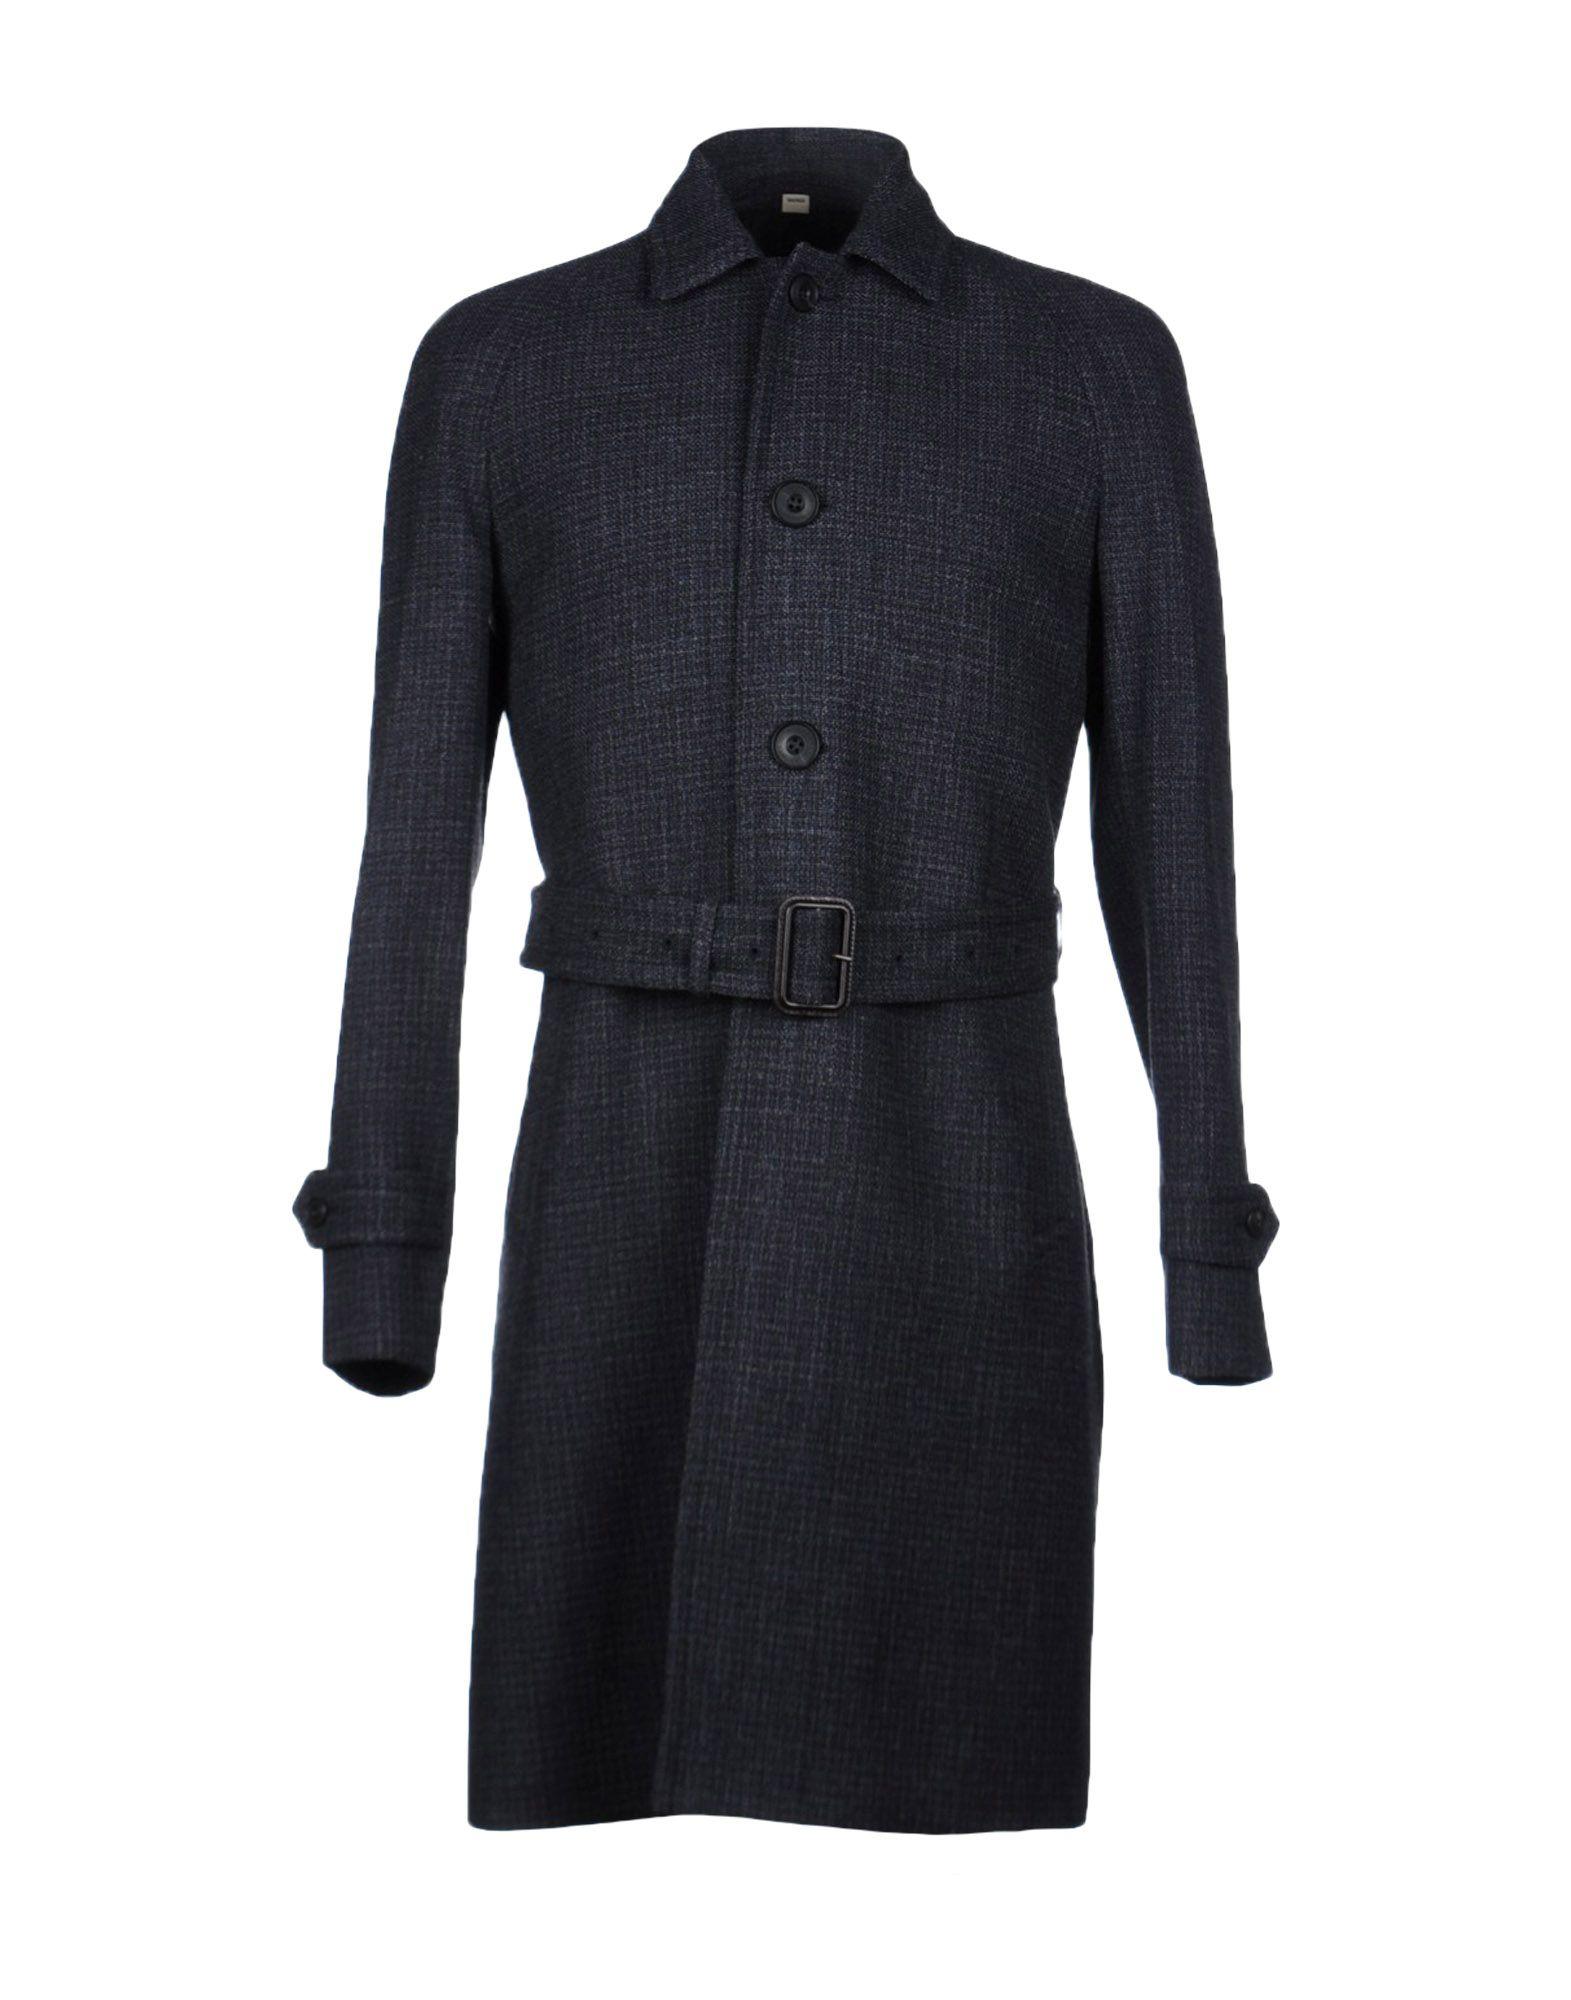 Cappotto grigio Burberry Prorsum in lana con cintura in pelle, polsini con cinturino e spacco sul retro